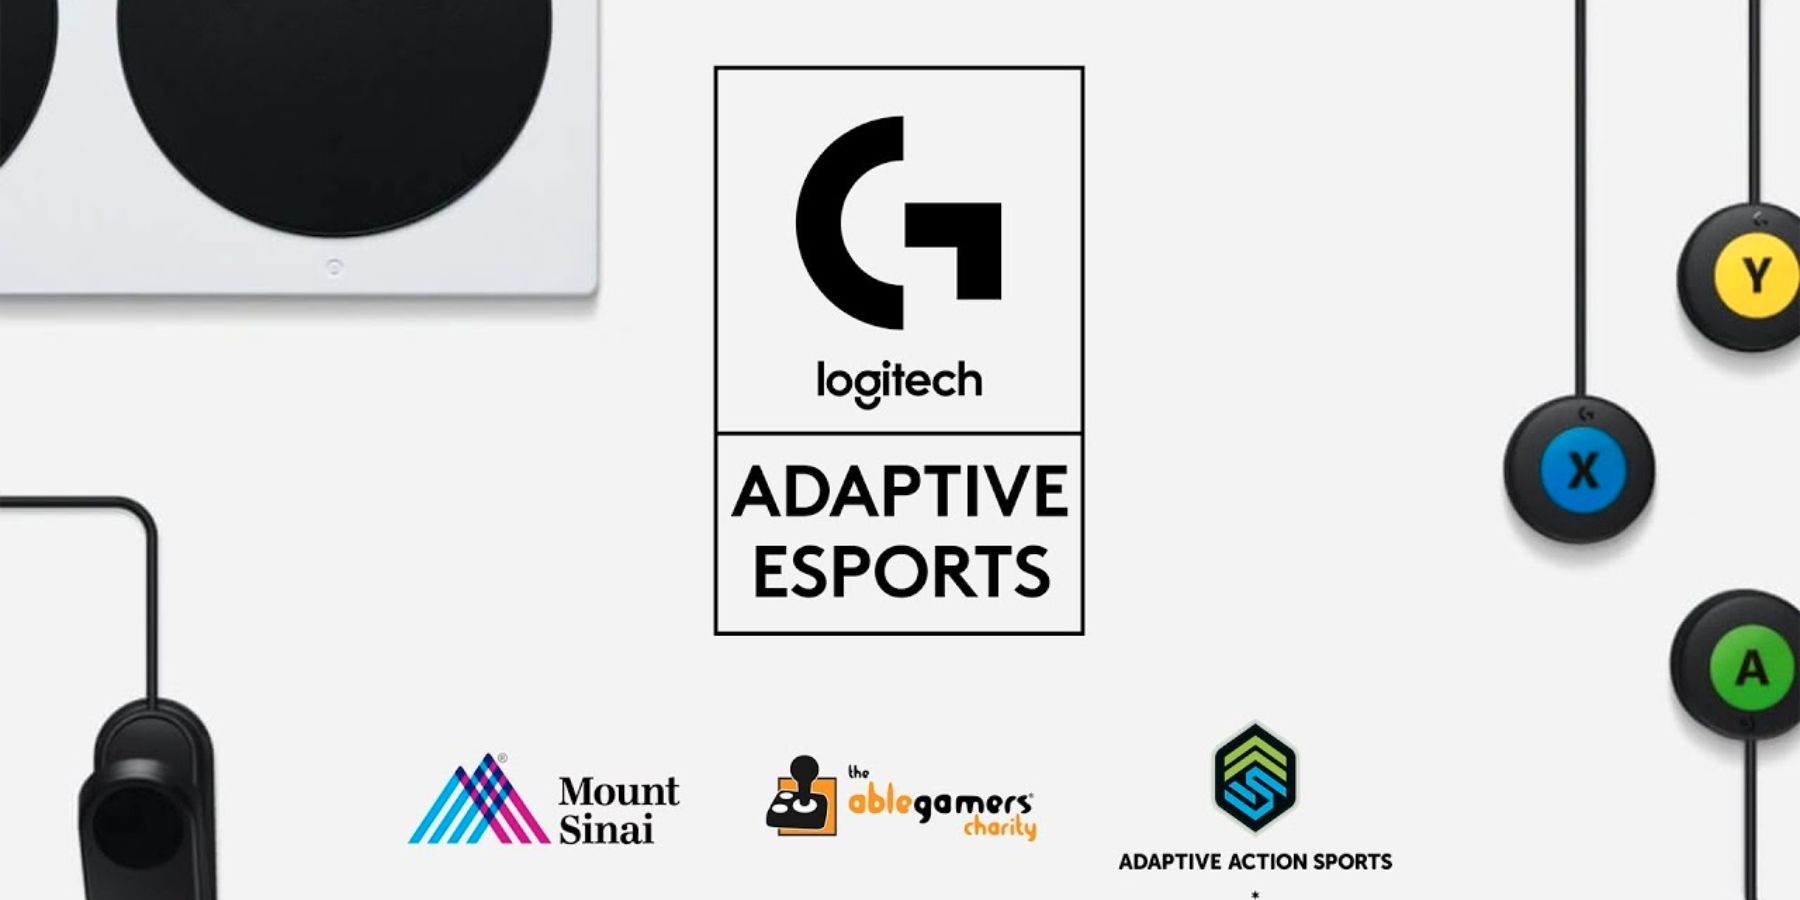 Logitech Gは、障害を持つゲーマーのためのアダプティブeスポーツコンペティションを主催します